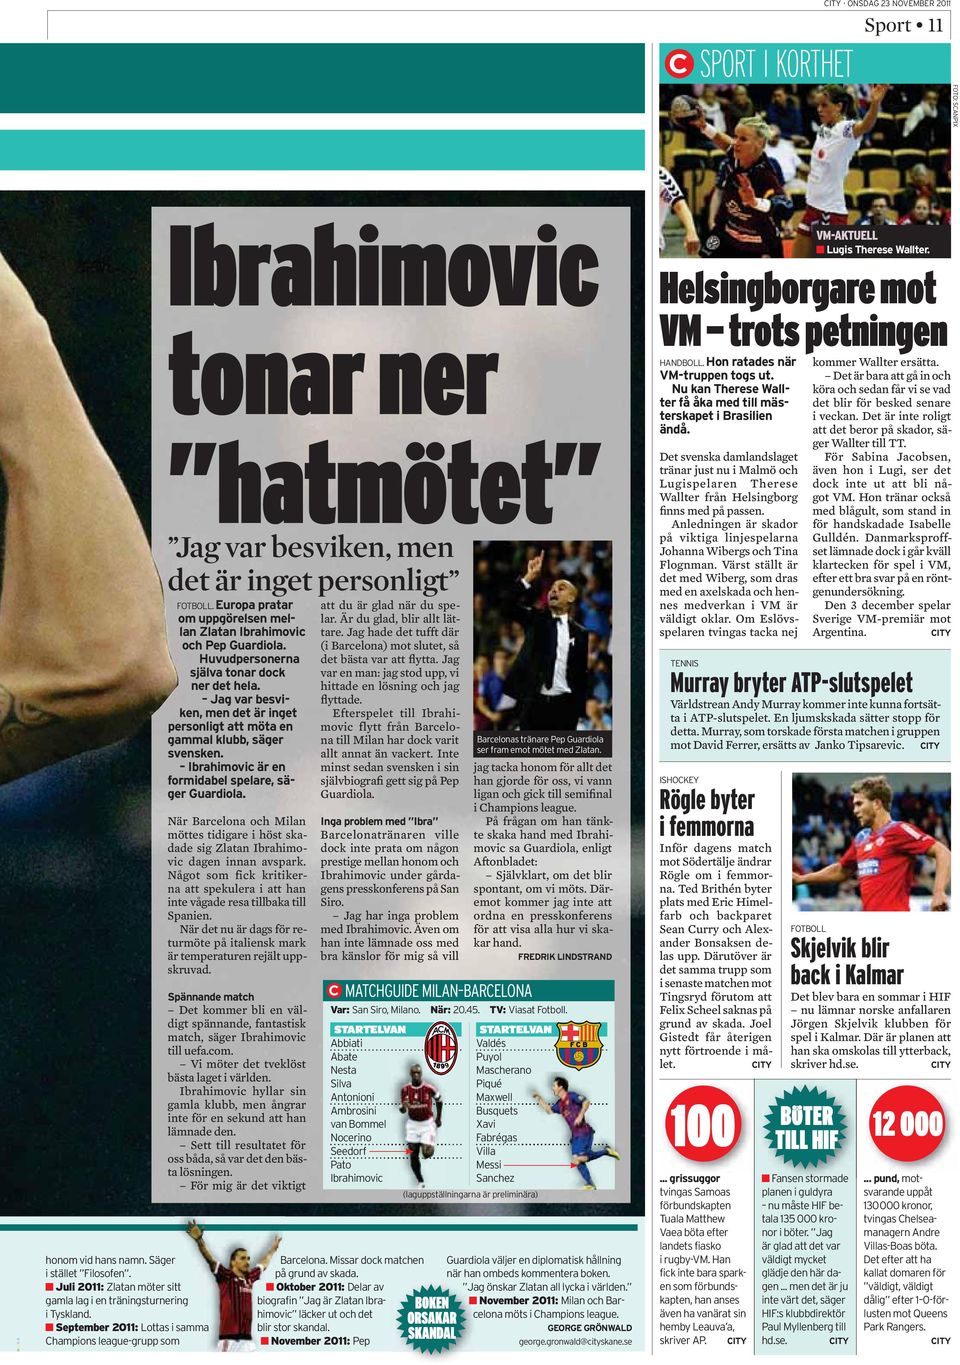 Det kommer bli en väldigt spännande, fantastisk match, säger Ibrahimovic till uefa.com. Vi möter det tveklöst bästa laget i världen.